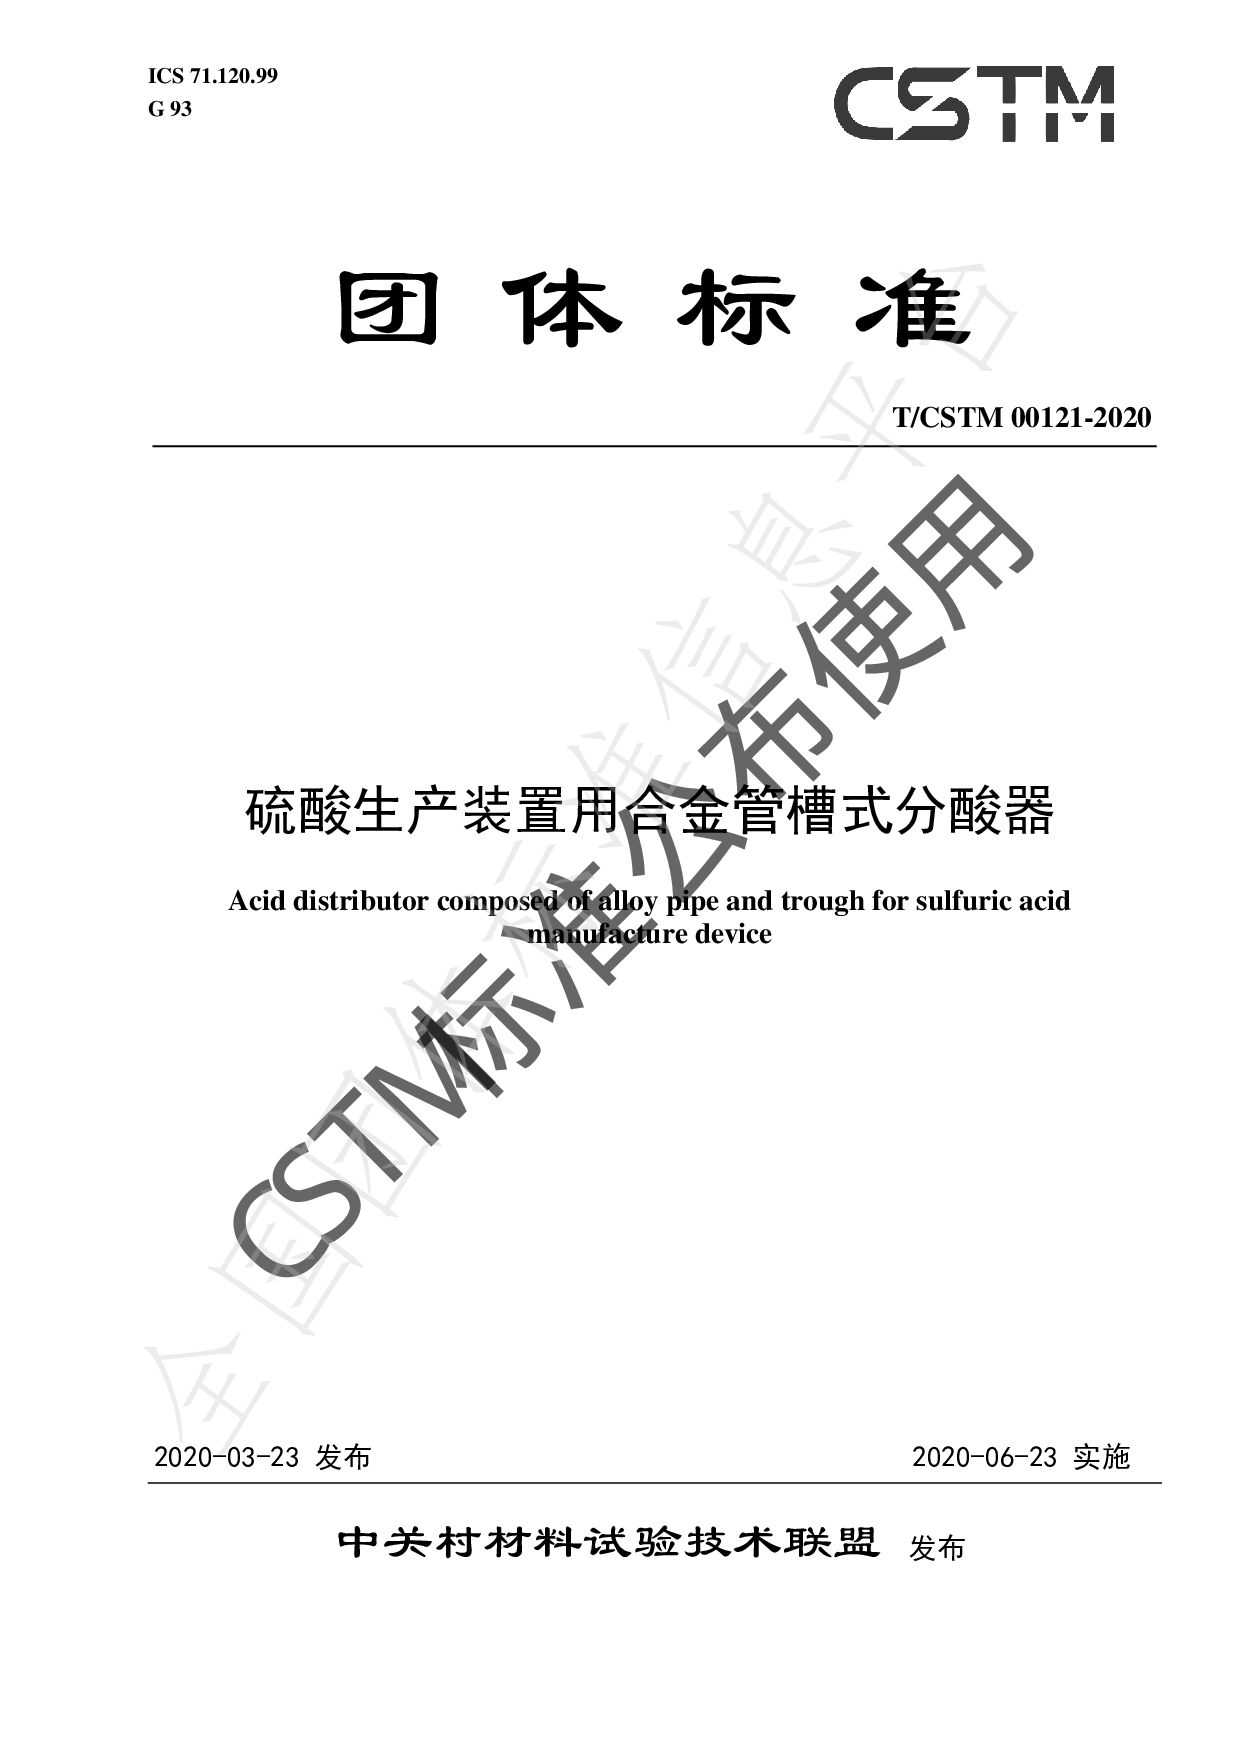 T/CSTM 00121-2020封面图